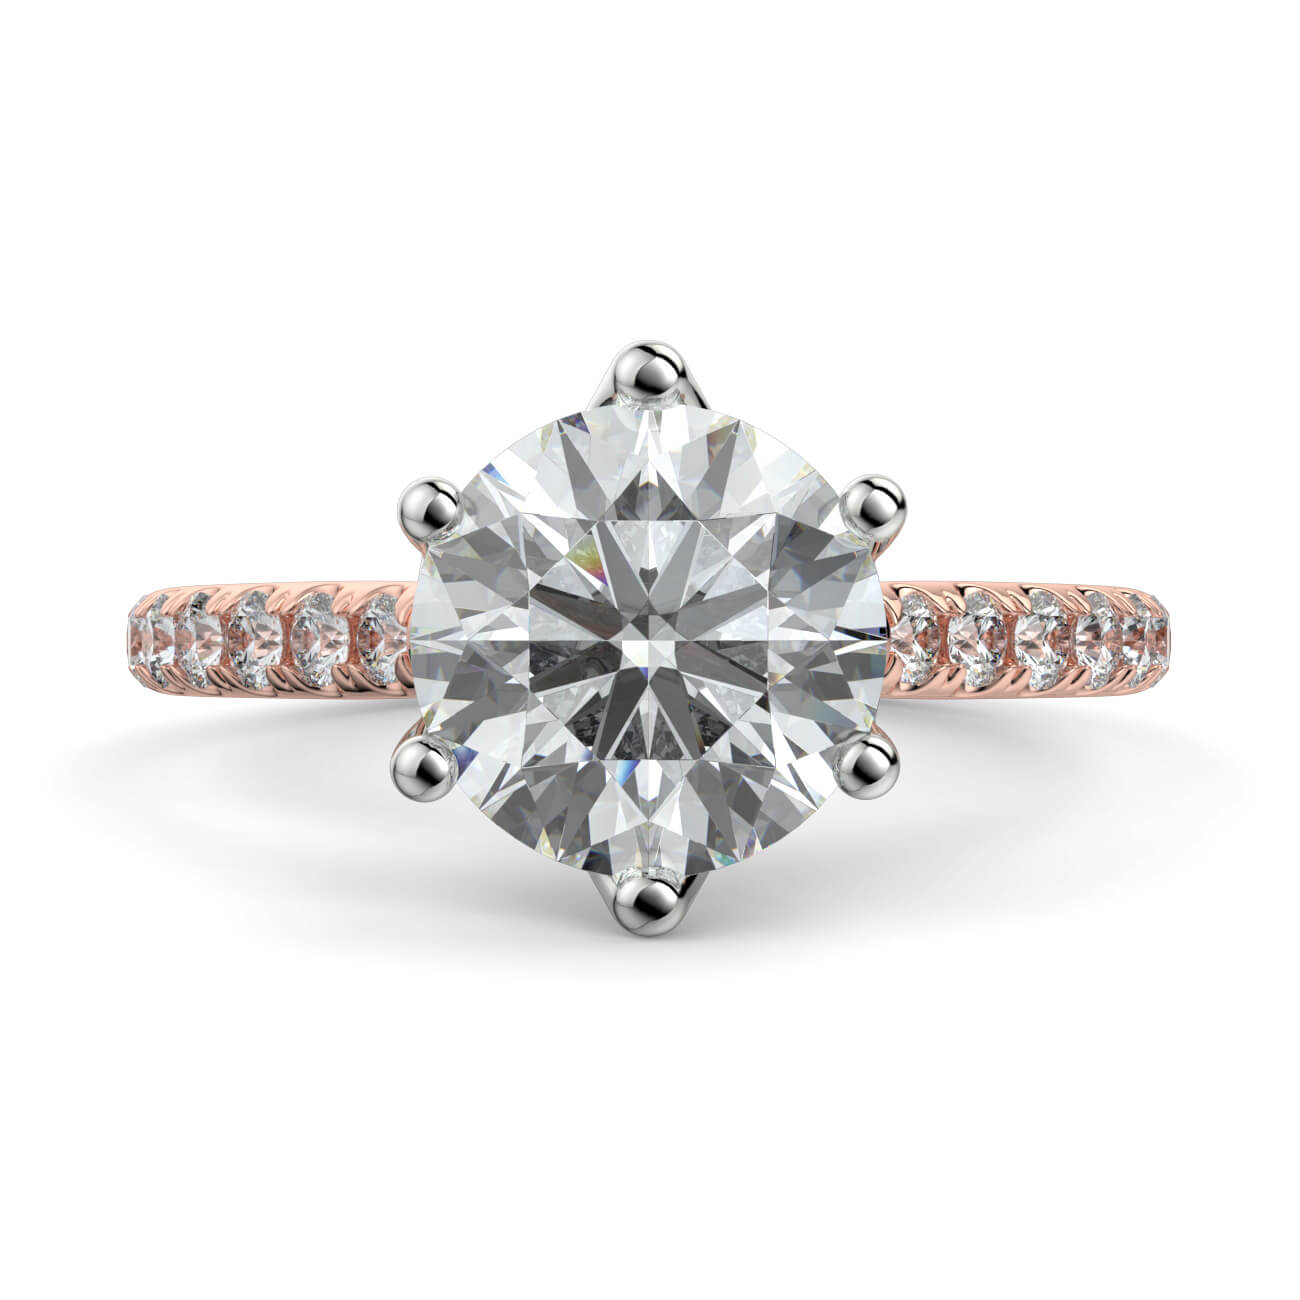 Tulip Basket Diamond Engagement Ring in 18k Rose & White Gold – Australian Diamond Network